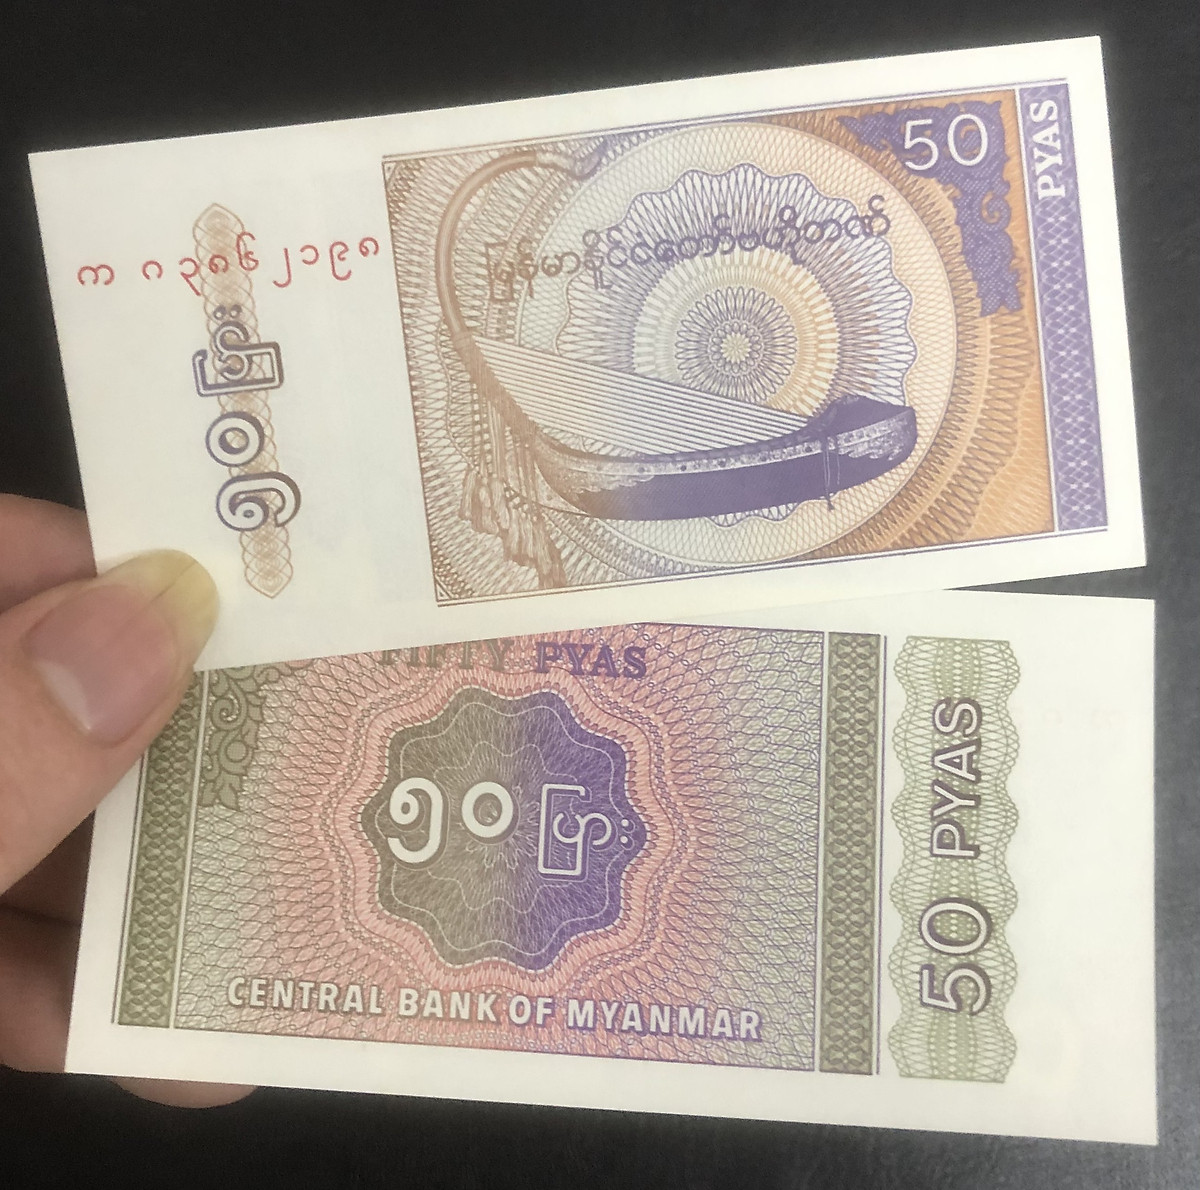 Tiền Myanmar 50 pyas nhỏ xinh - Tiền mới keng 100% - Tặng túi nilon bảo quản